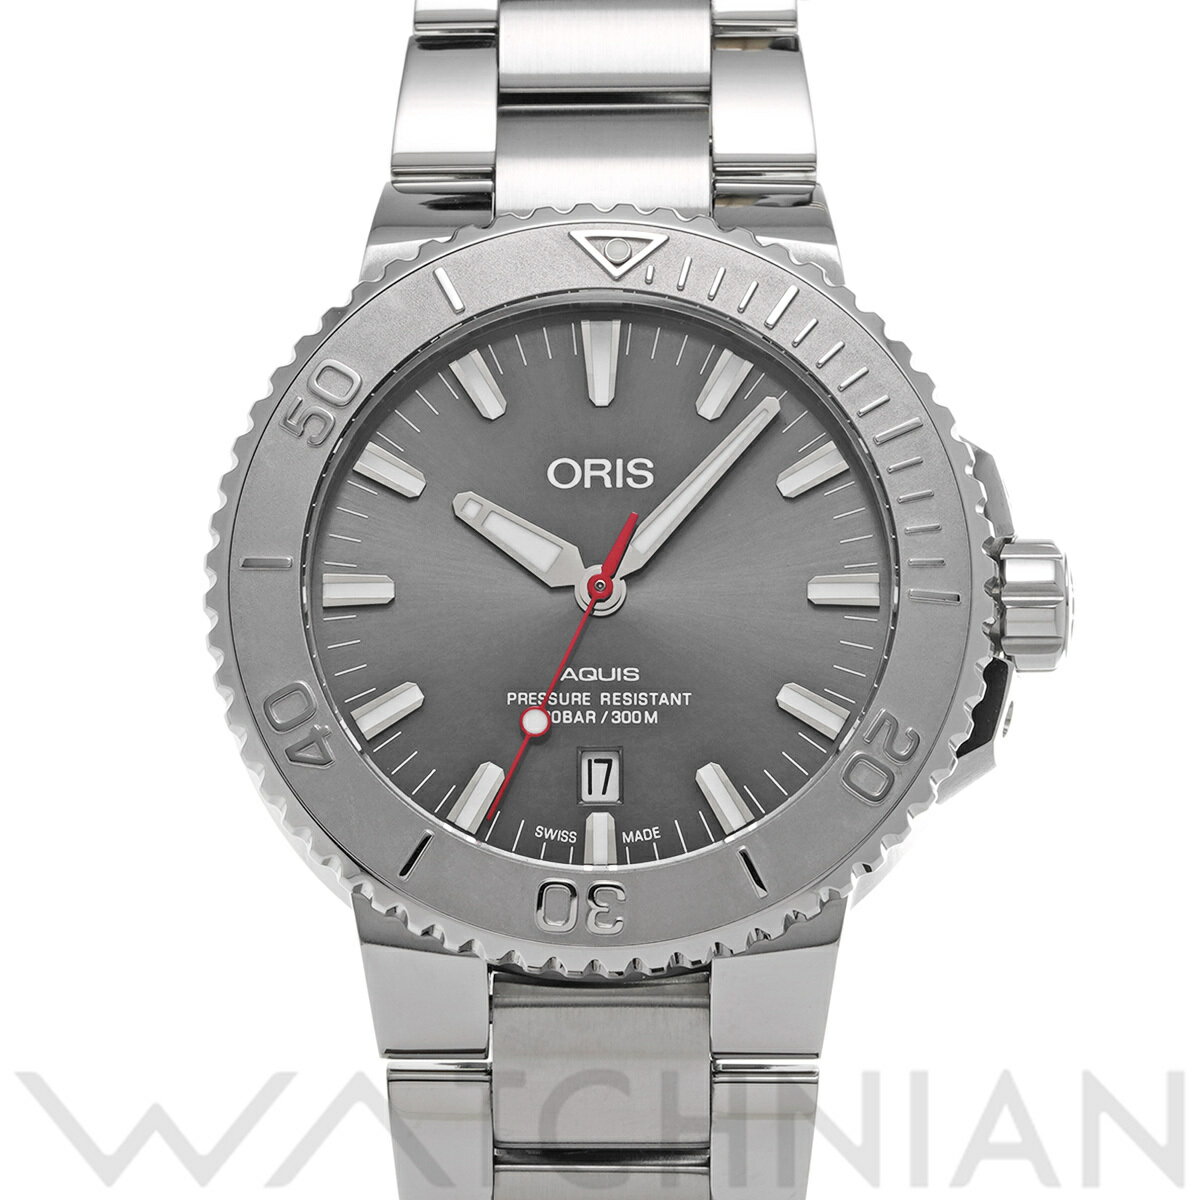  オリス ORIS アクイス デイト レリーフ 01 733 7730 4153-07 8 24 05PEB グレー メンズ 腕時計 オリス 時計 高級腕時計 ブランド